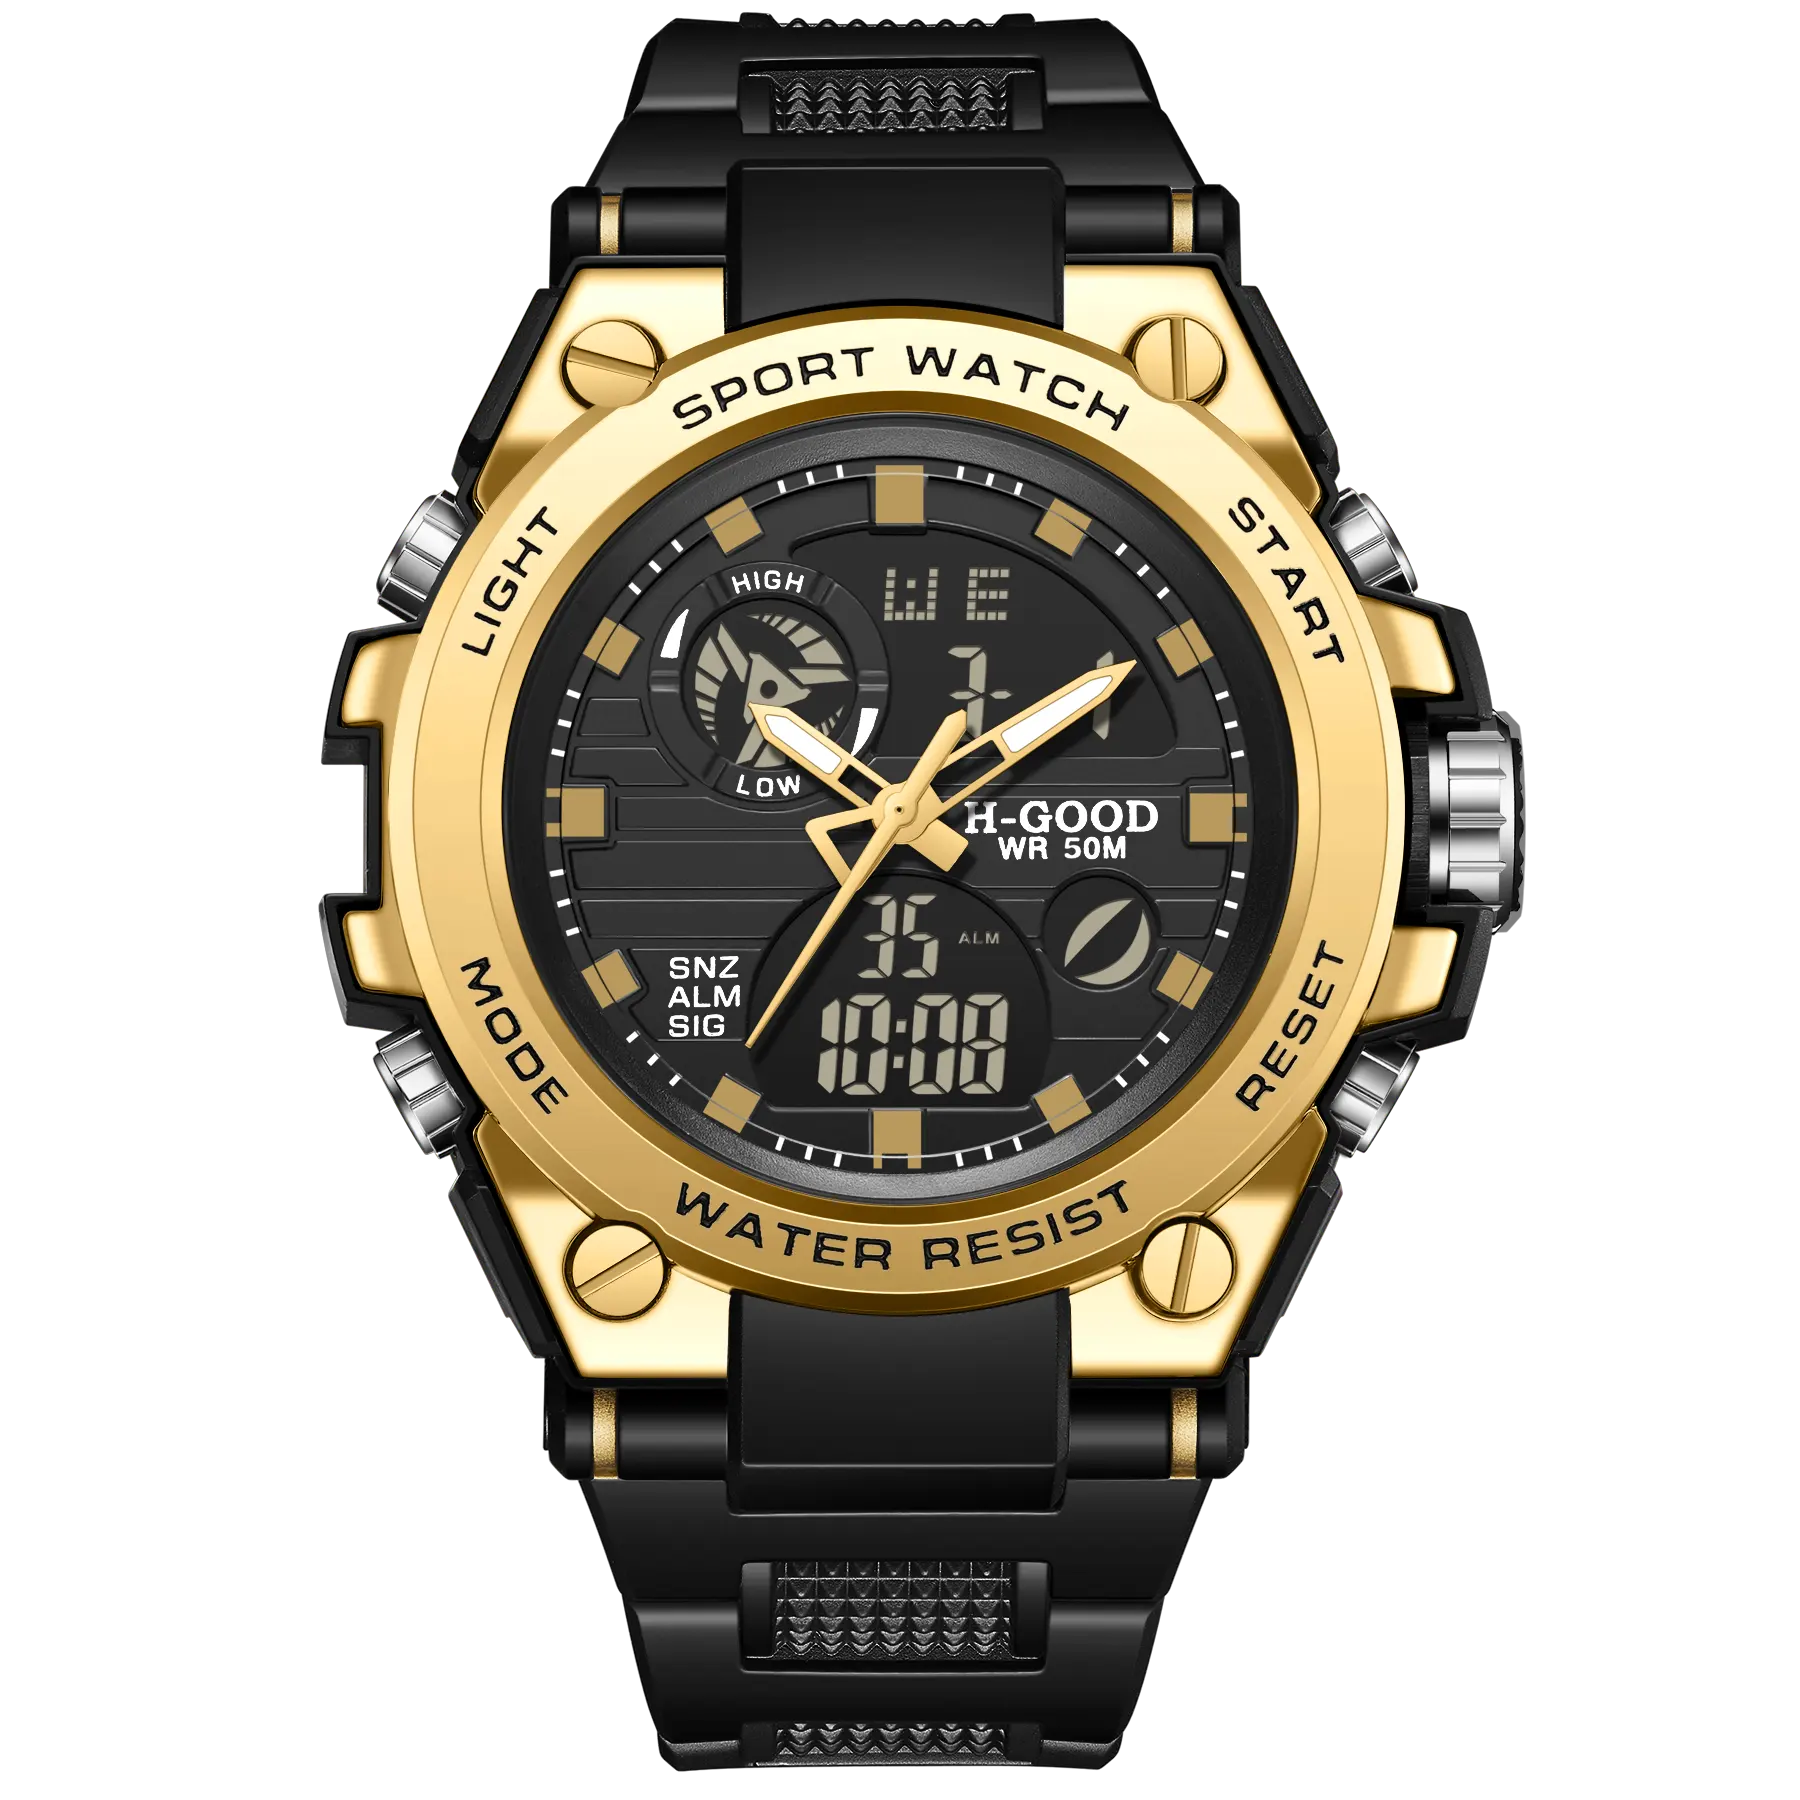 H-GOOD TK0007สีดำศุกร์การเคลื่อนไหวควอตซ์จอแสดงผลคู่กันน้ำนาฬิกาข้อมือผู้ชายแบรนด์ Oem นาฬิกา Led G ช็อกนาฬิกา